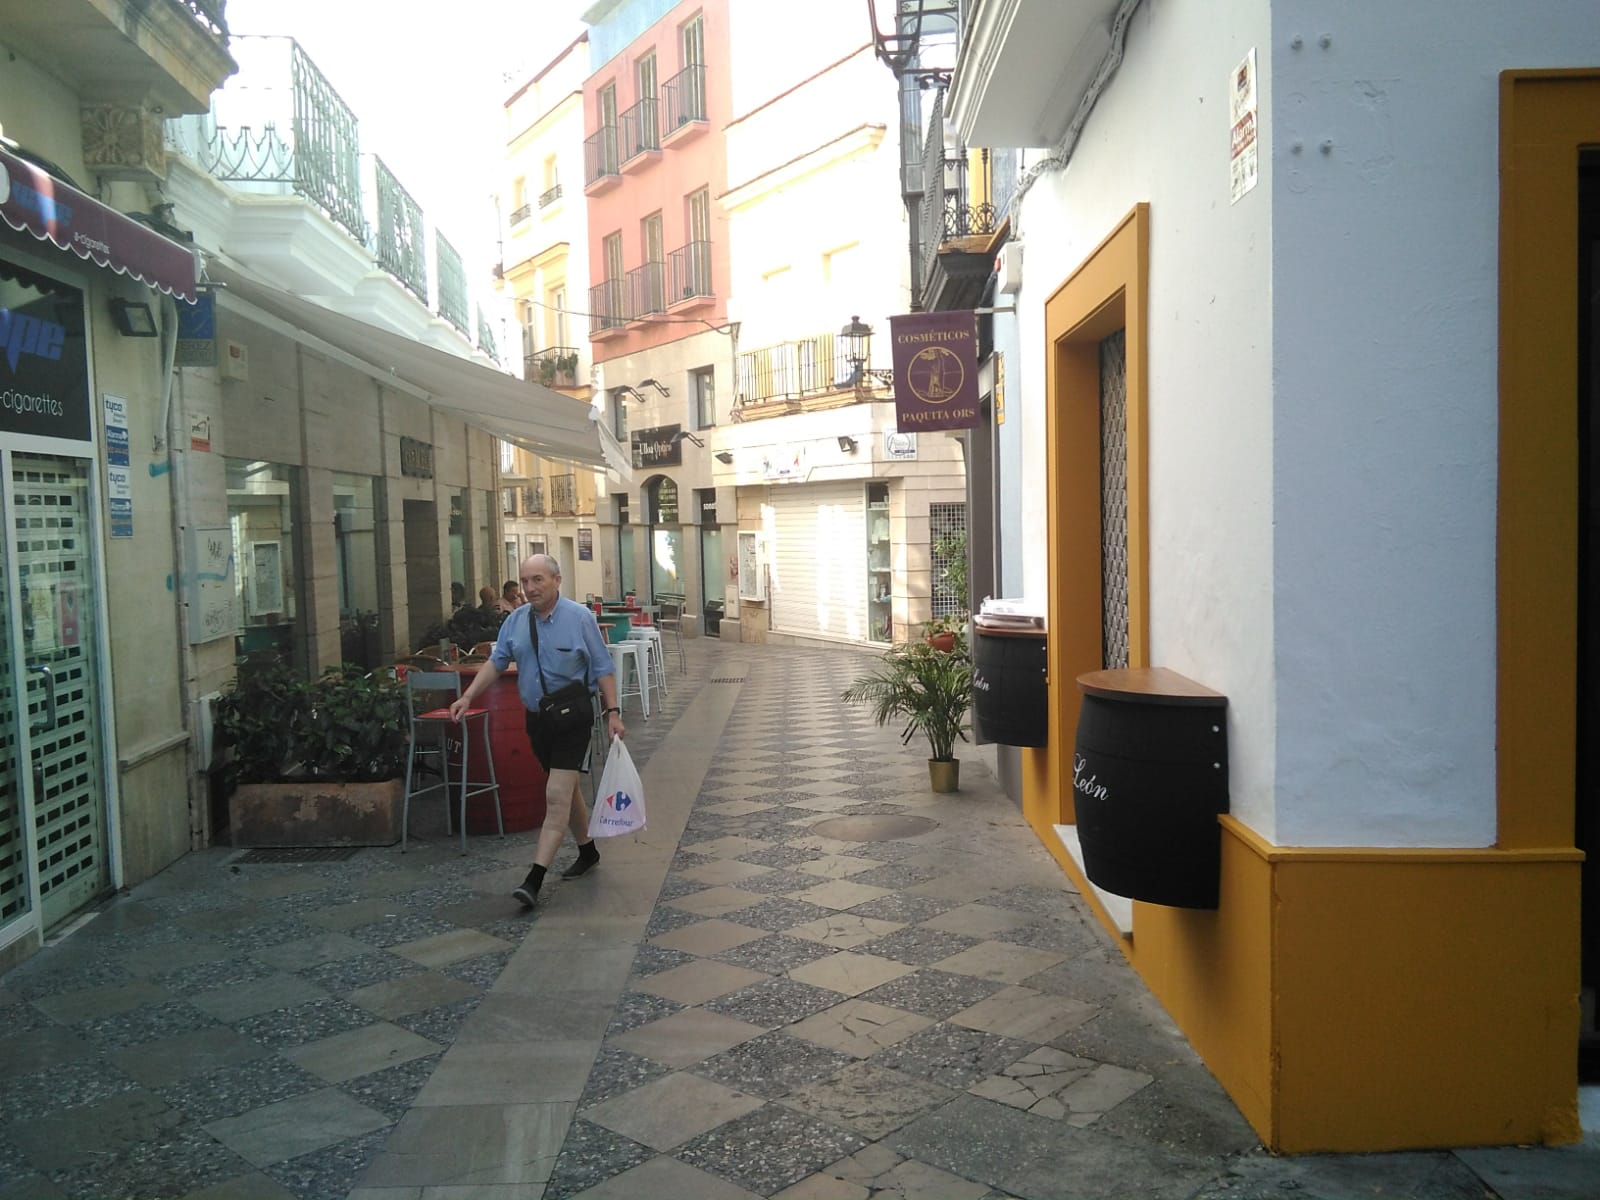 El inicio de la calle Algarve, con el café-bar La escalera de Carmela a la izquierda y La Lonja a la derecha. FOTO: CLAUDIA GONZÁLEZ ROMERO. 